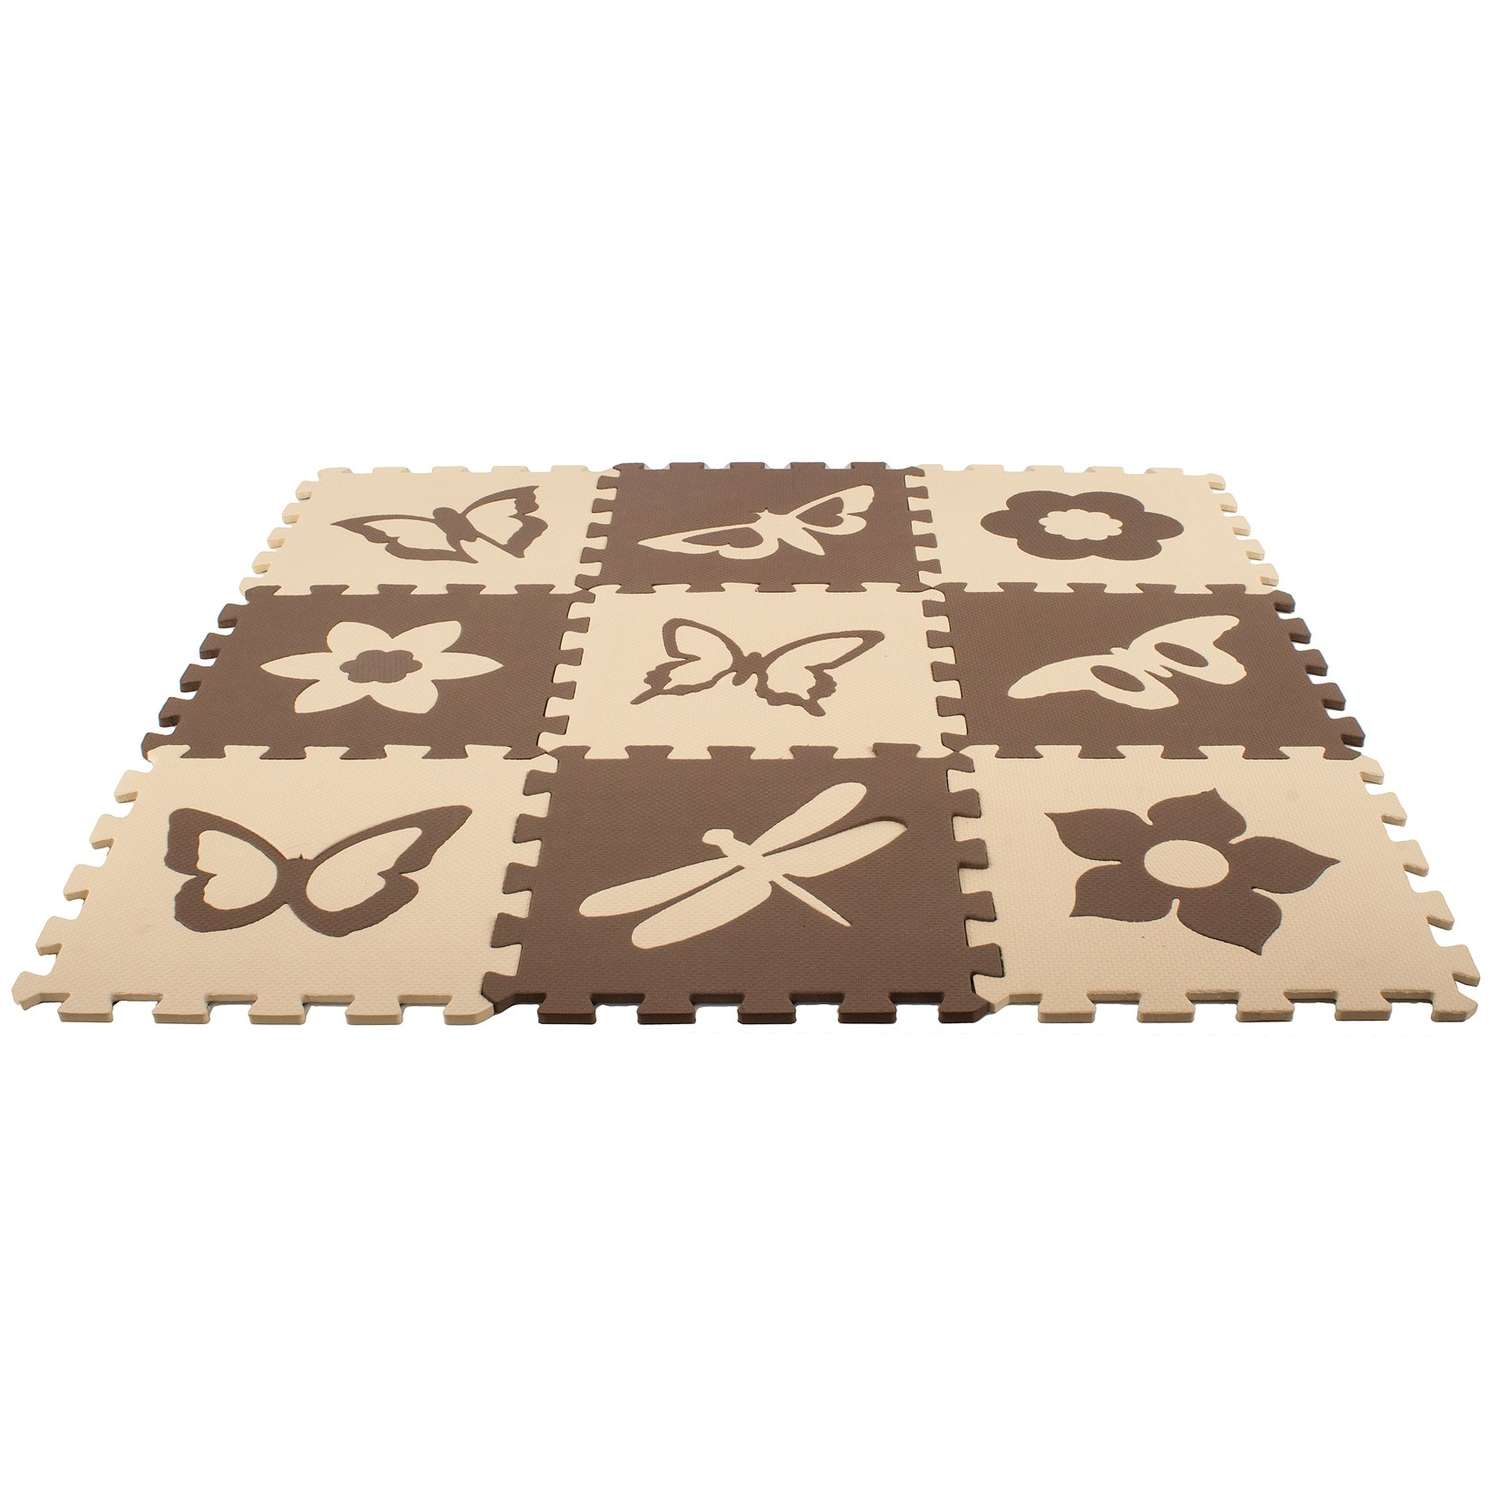 Развивающий детский коврик Eco cover игровой для ползания мягкий пол Бабочки - 2 бежево-коричневый 30х30 - фото 3